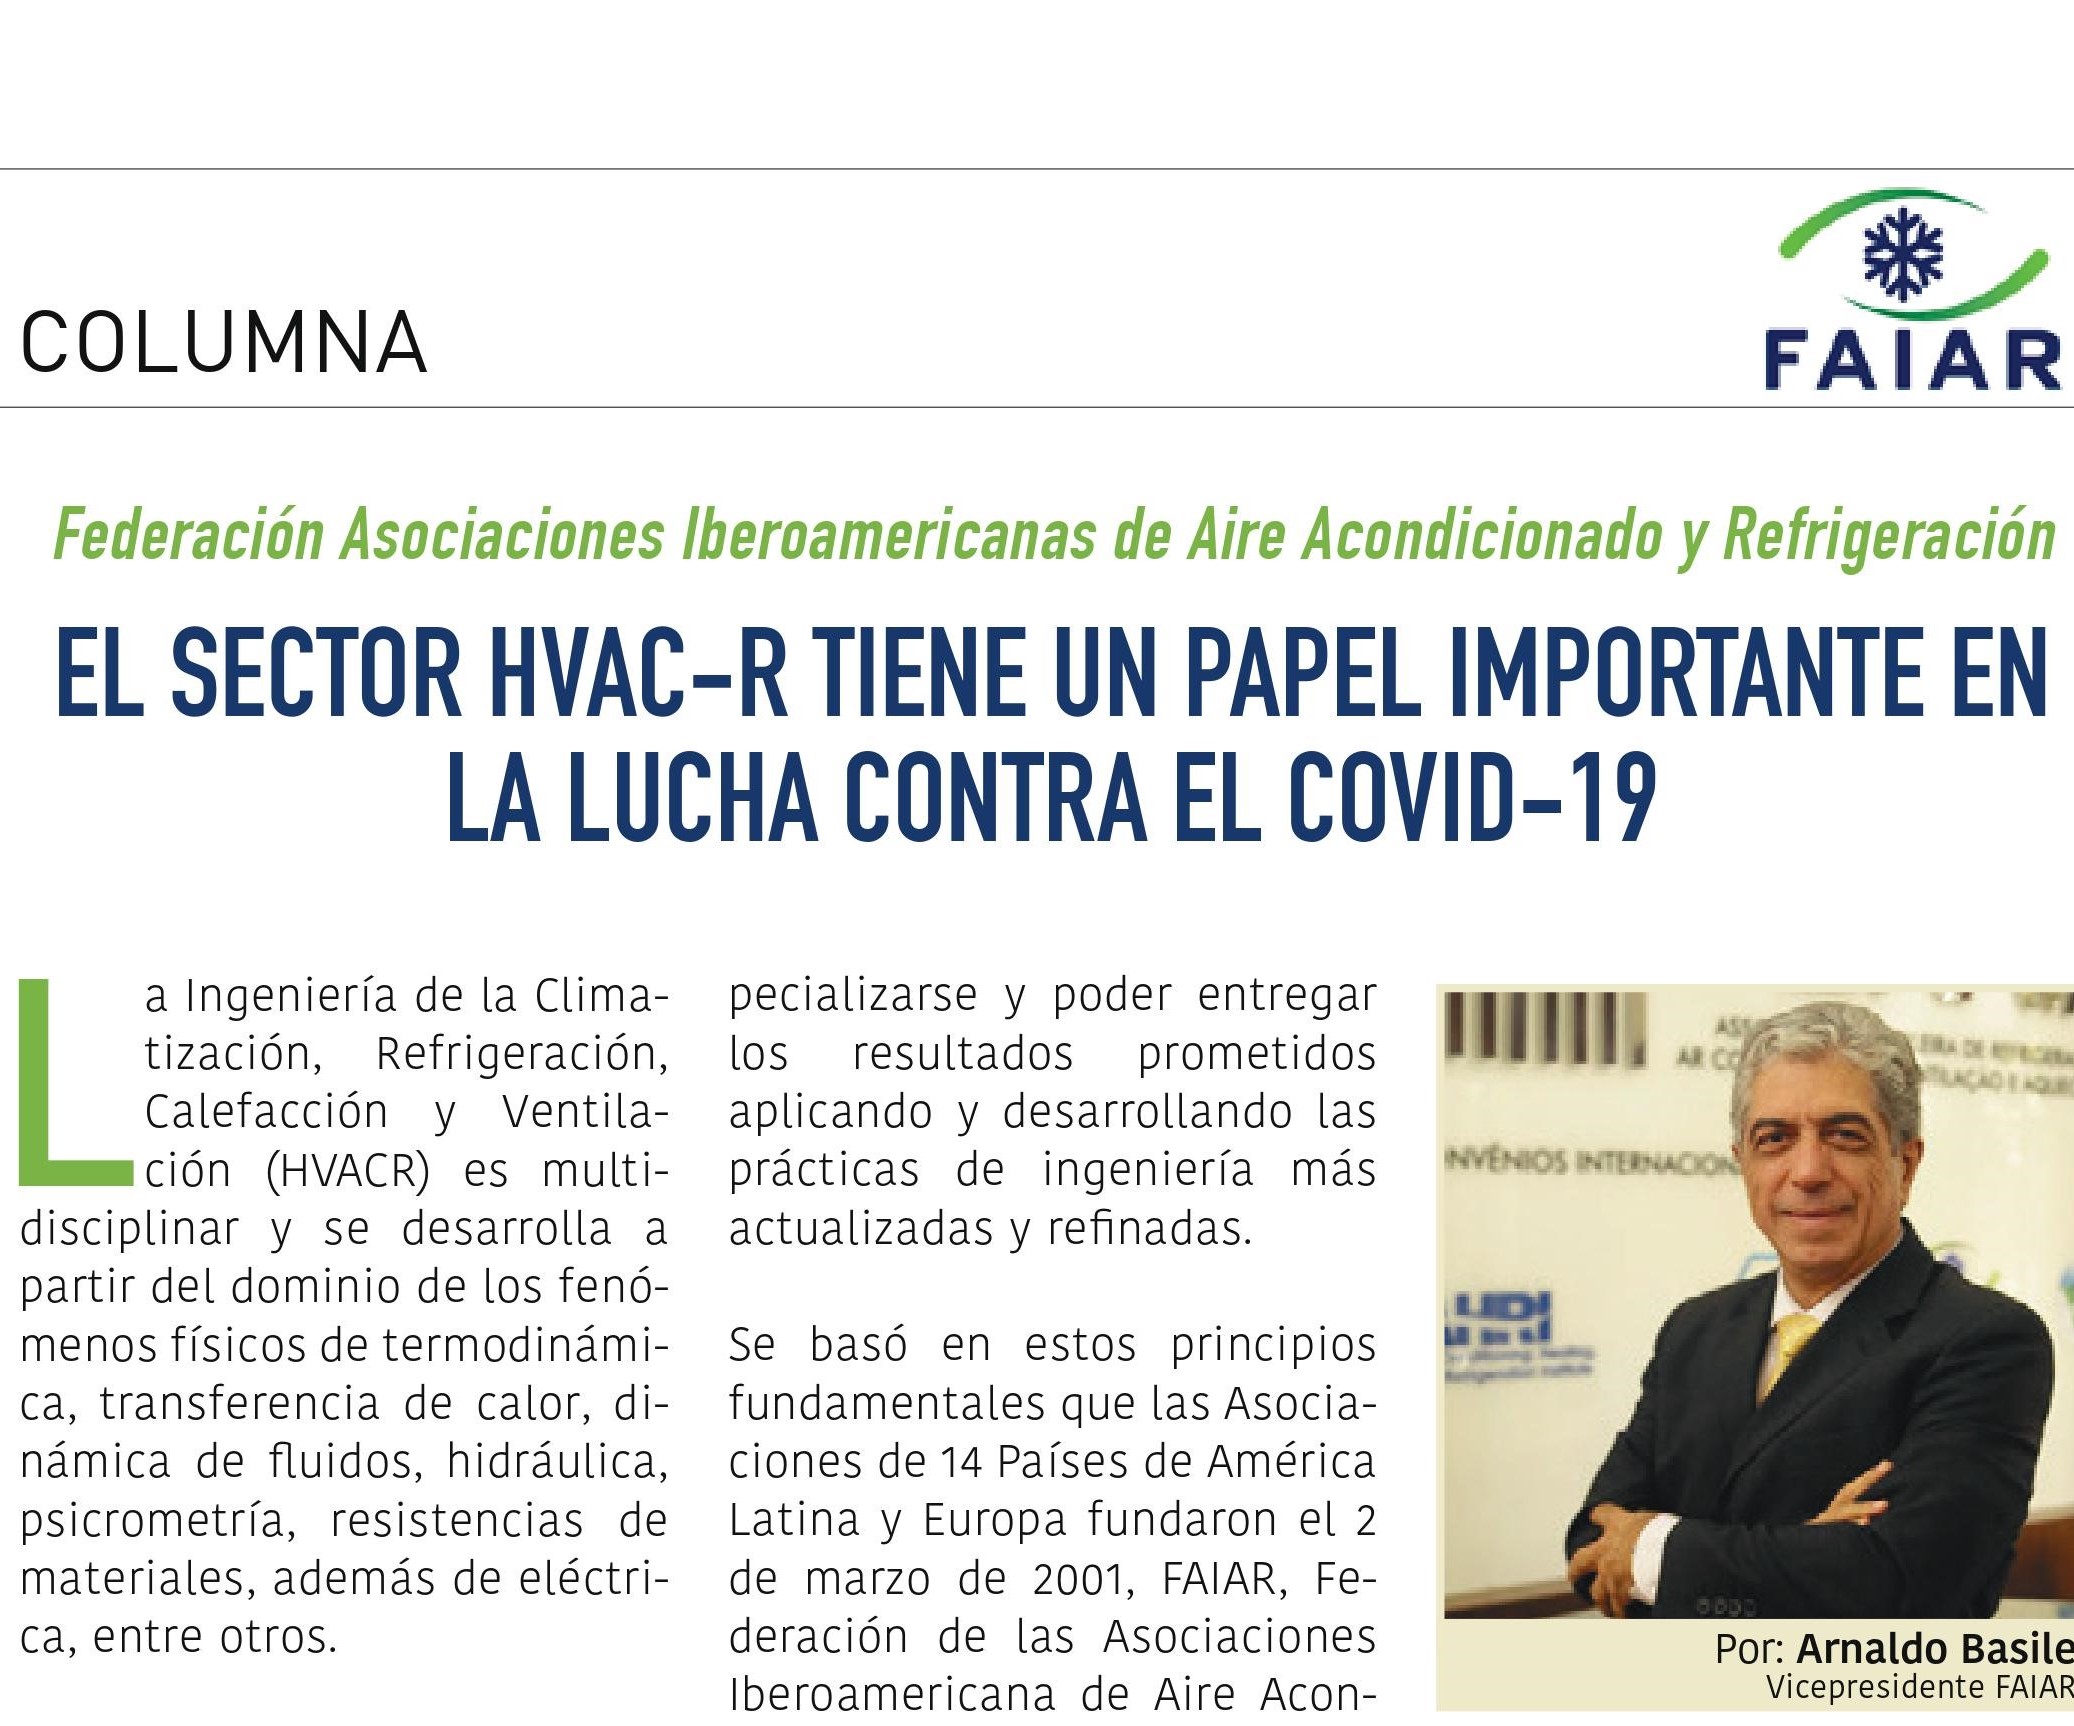 Artigo – El sector HVAC-R tiene un papel importante en la lucha contra el COVID19 por Arnaldo Basile para FAIAR